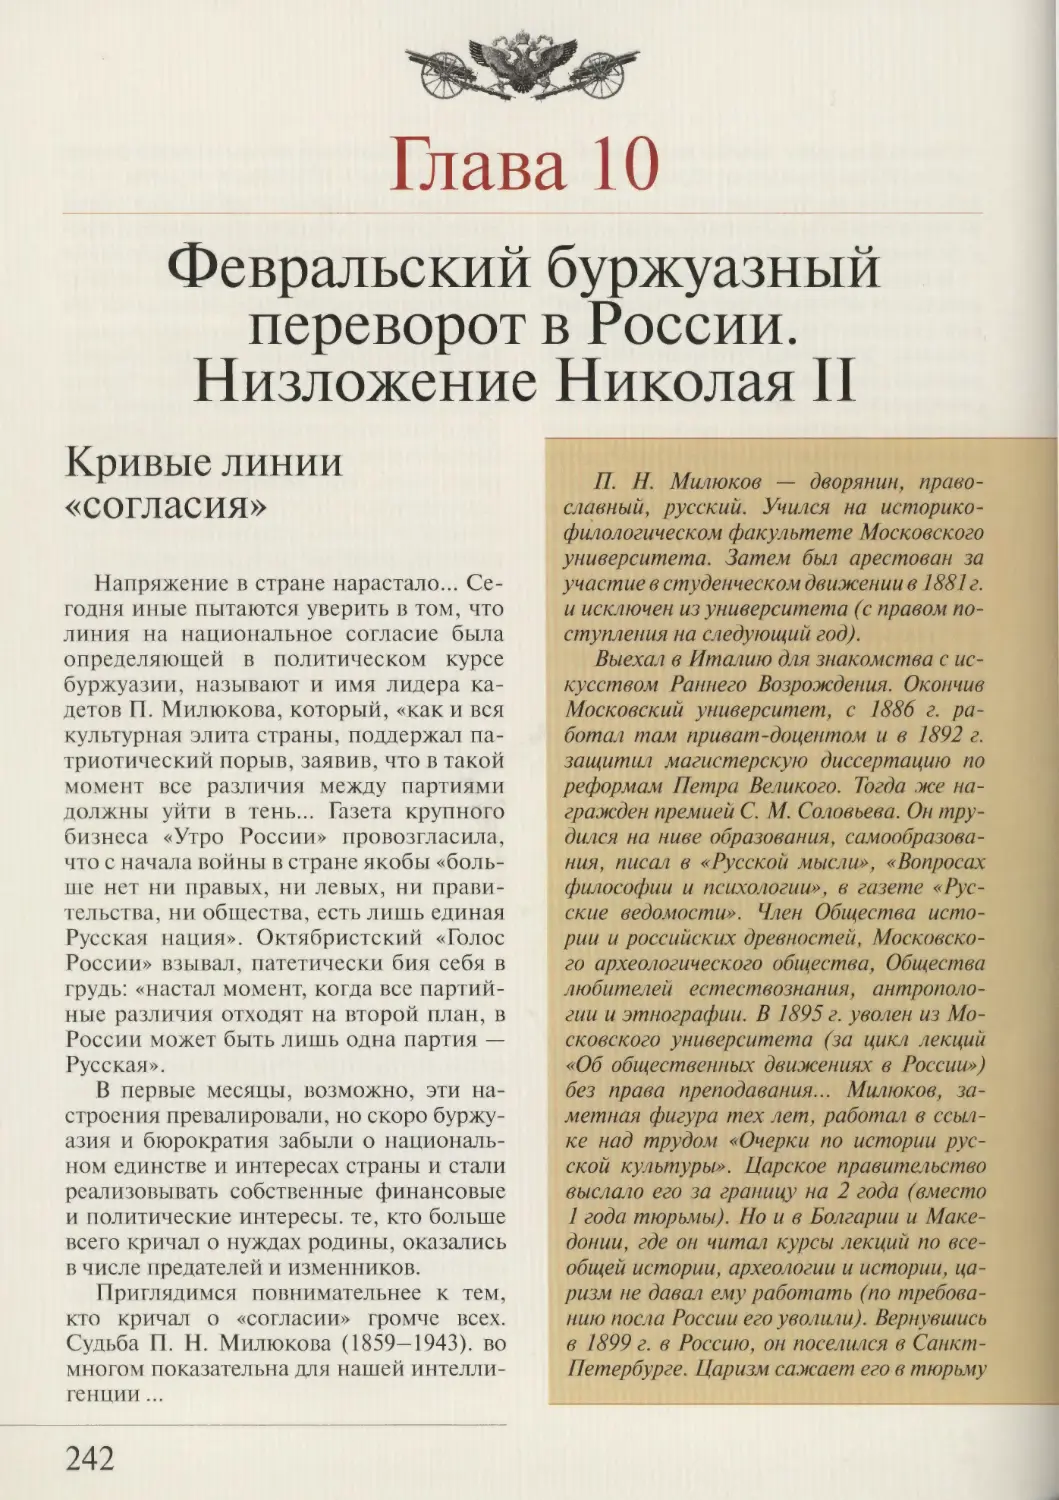 ГЛАВА 10. Февральский буржуазный переворот в России. Низложение Николая II